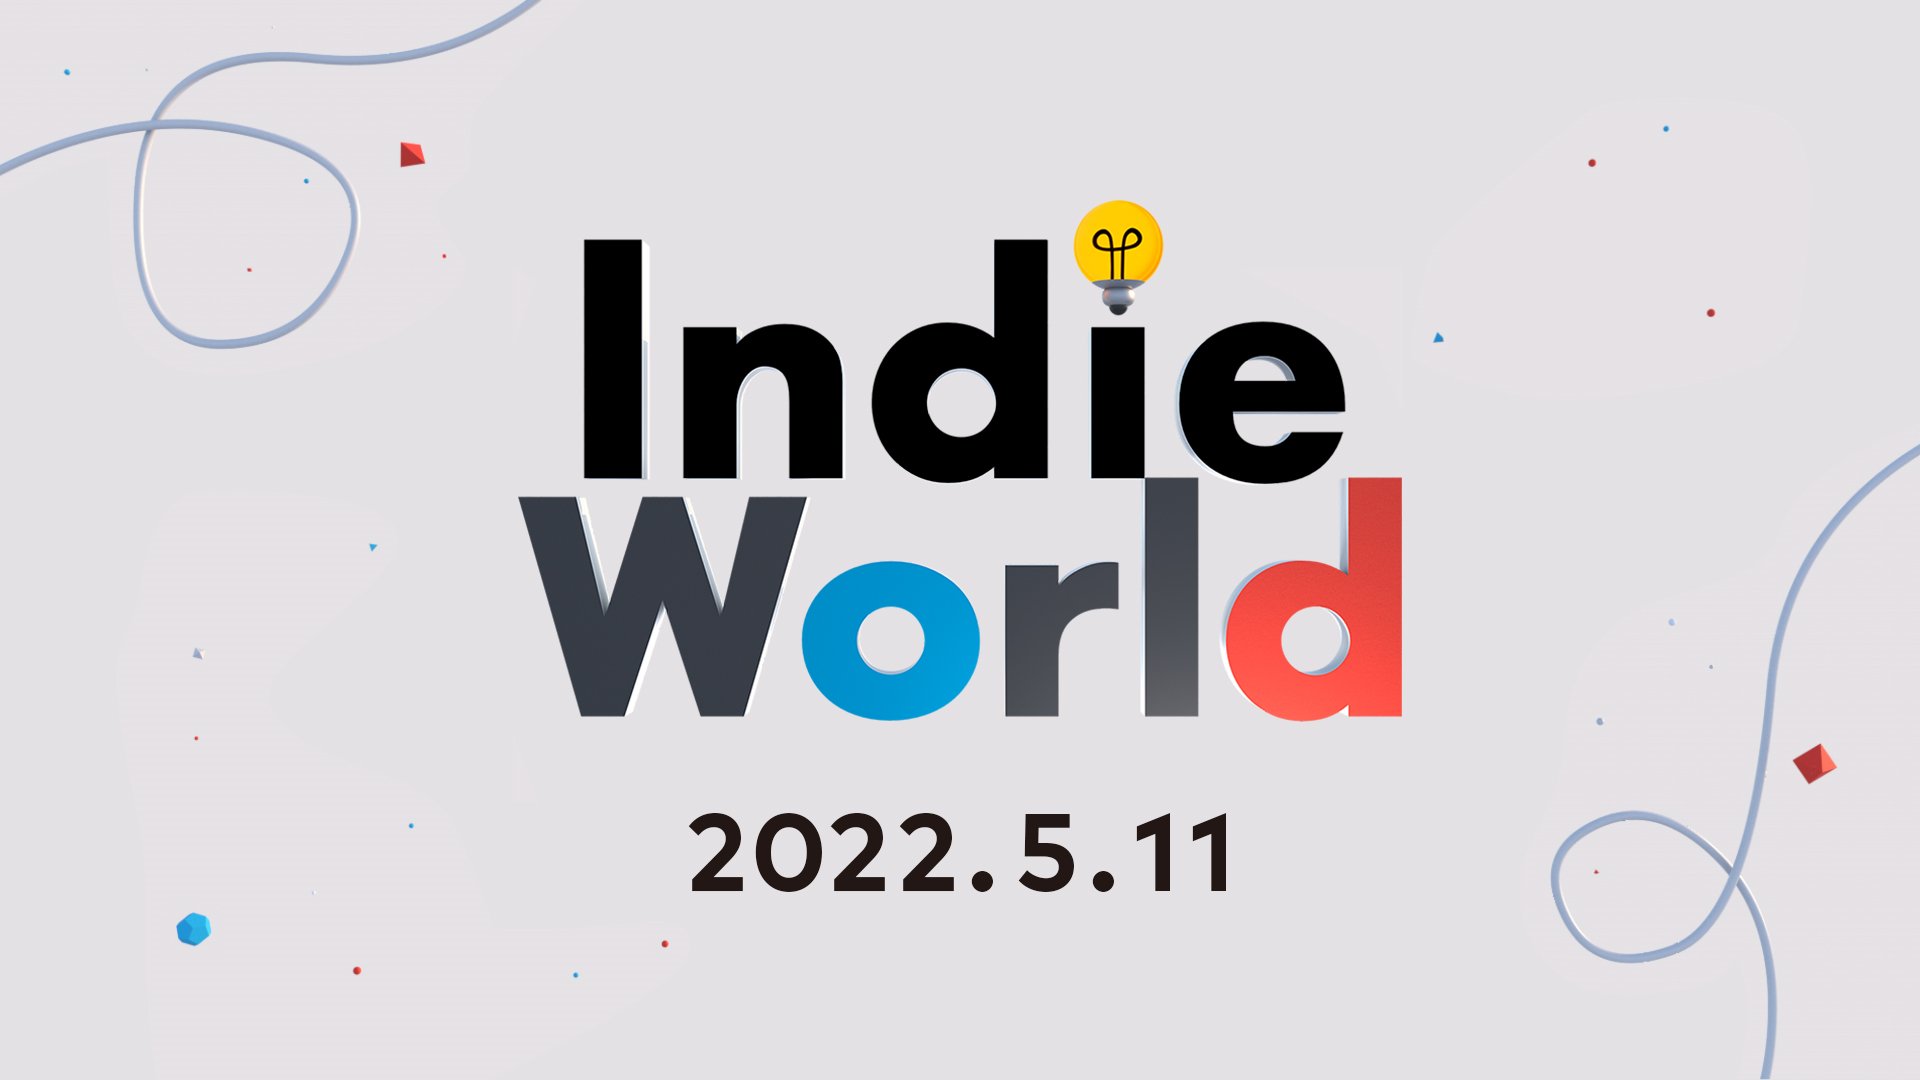 Indie World 2022.5.11